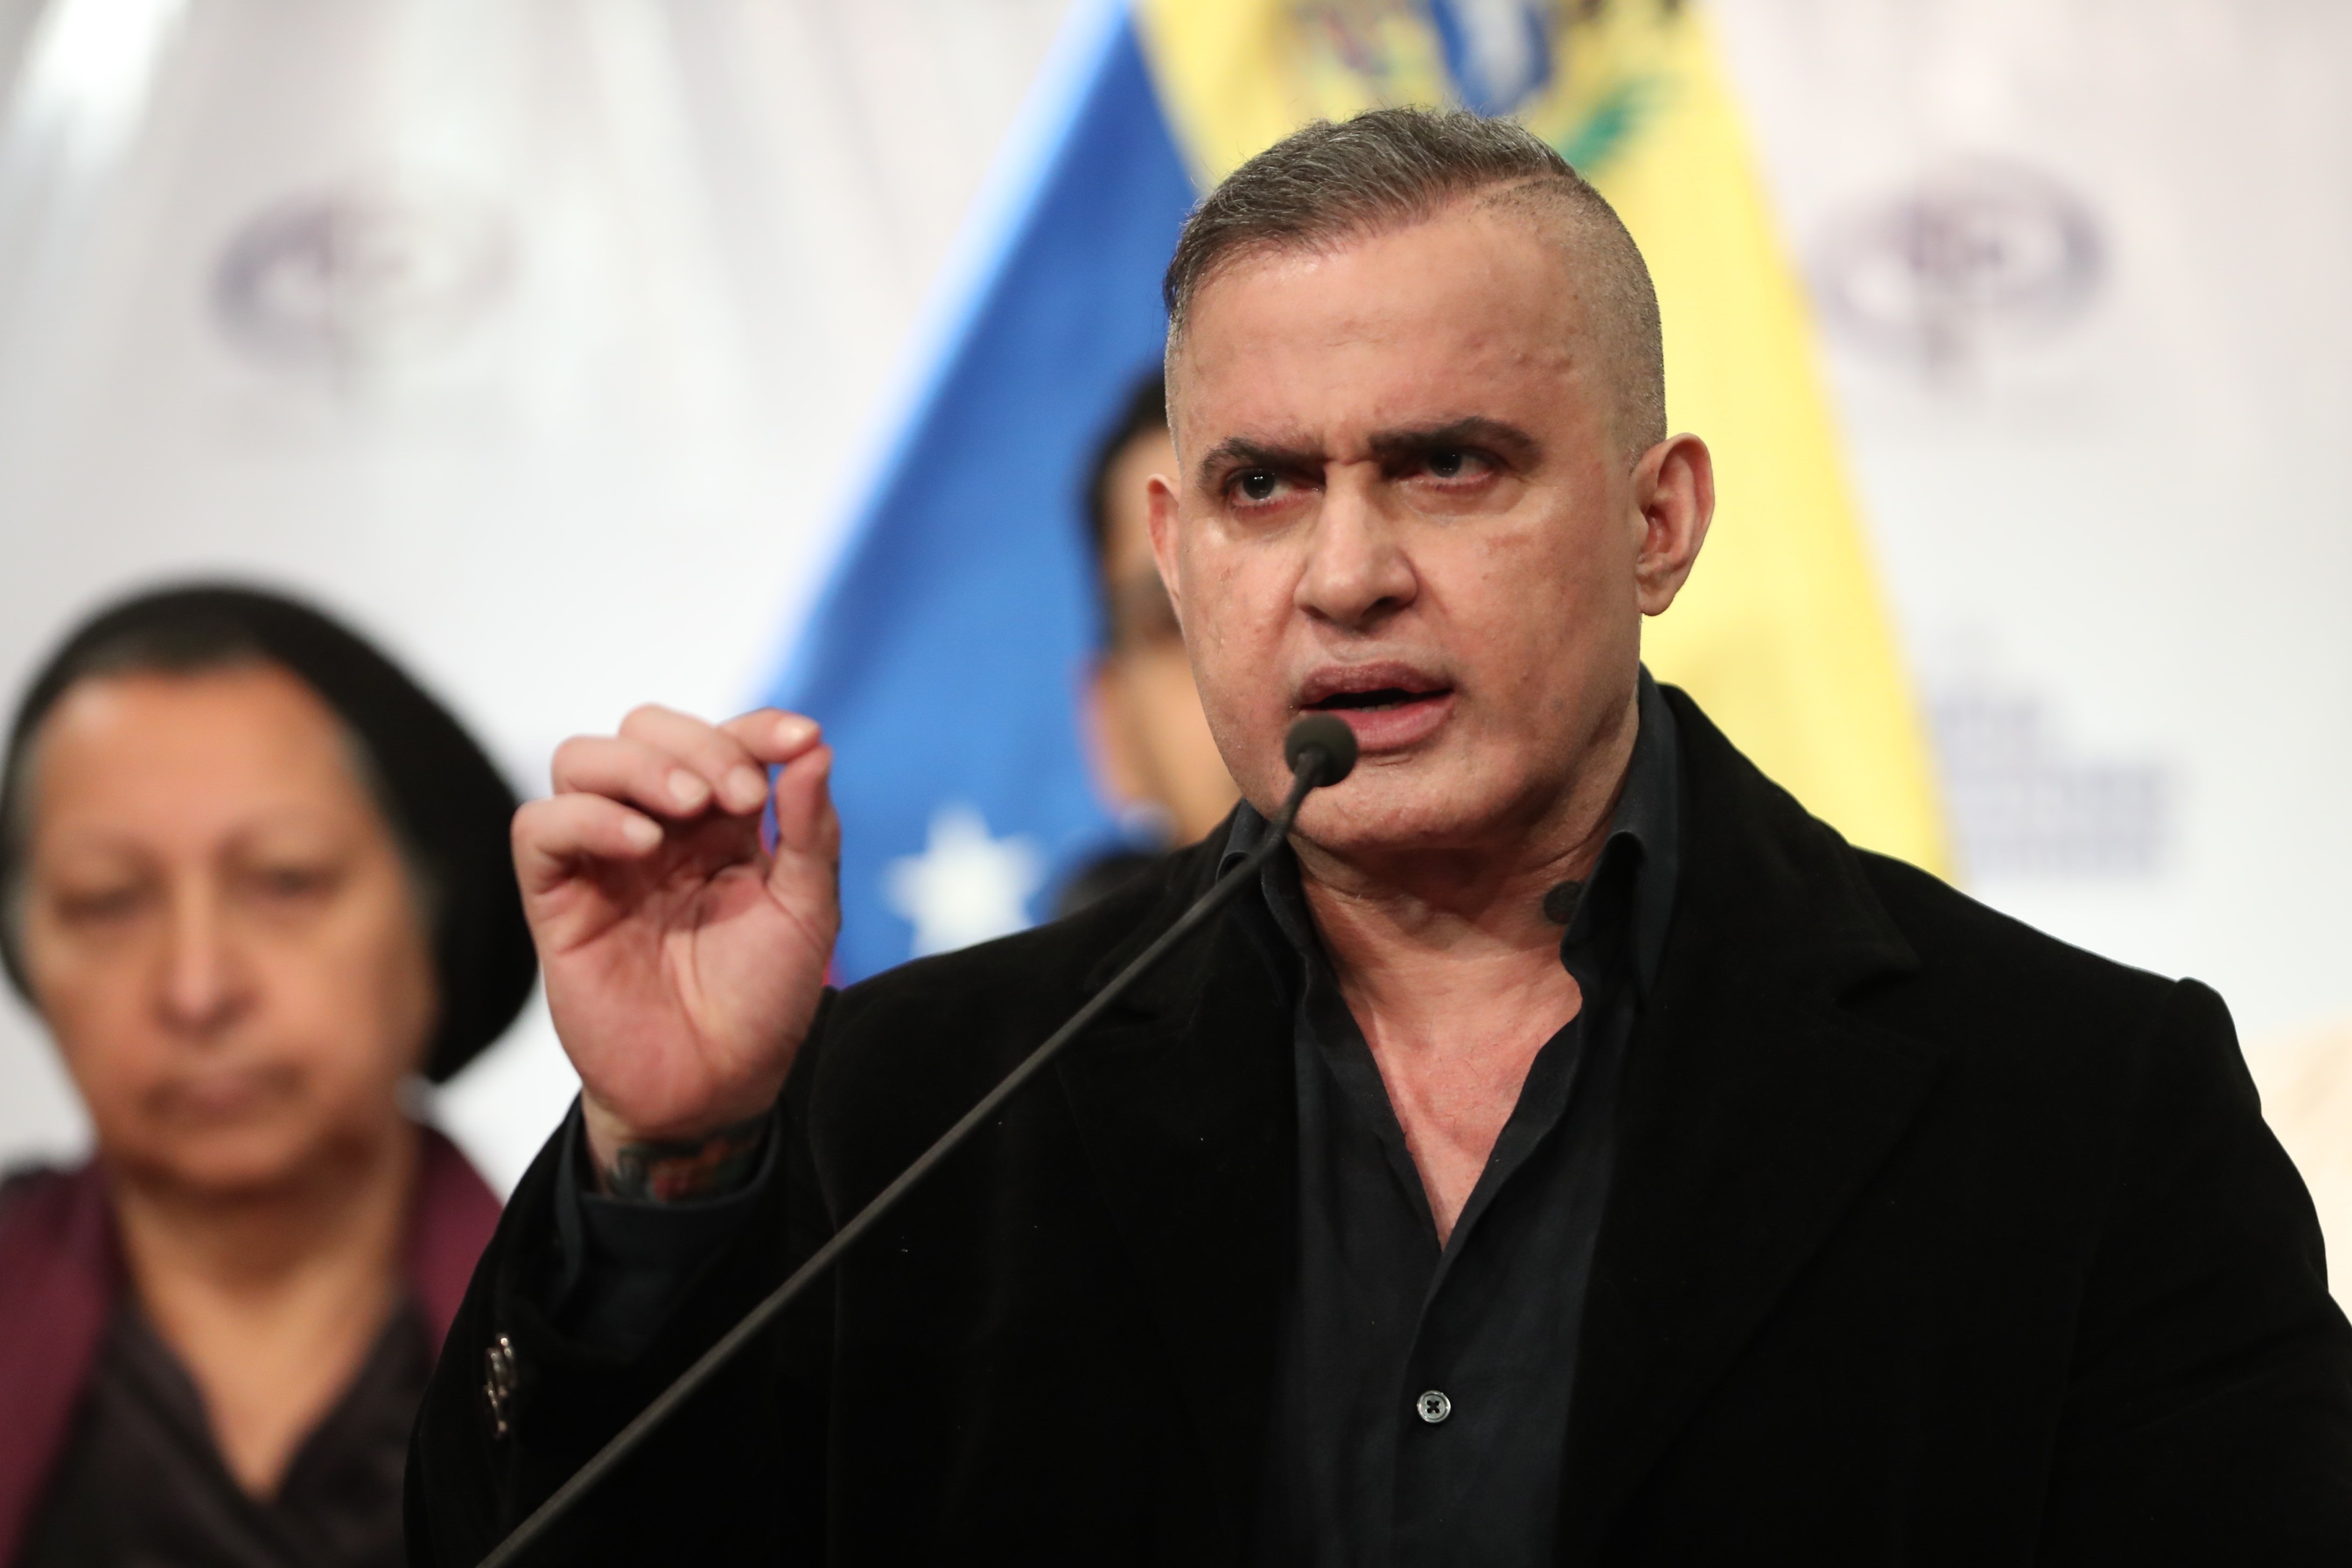 El fiscal del chavismo dijo que la justicia en Venezuela funciona con “un estándar superior a cualquier otro país del hemisferio occidental”